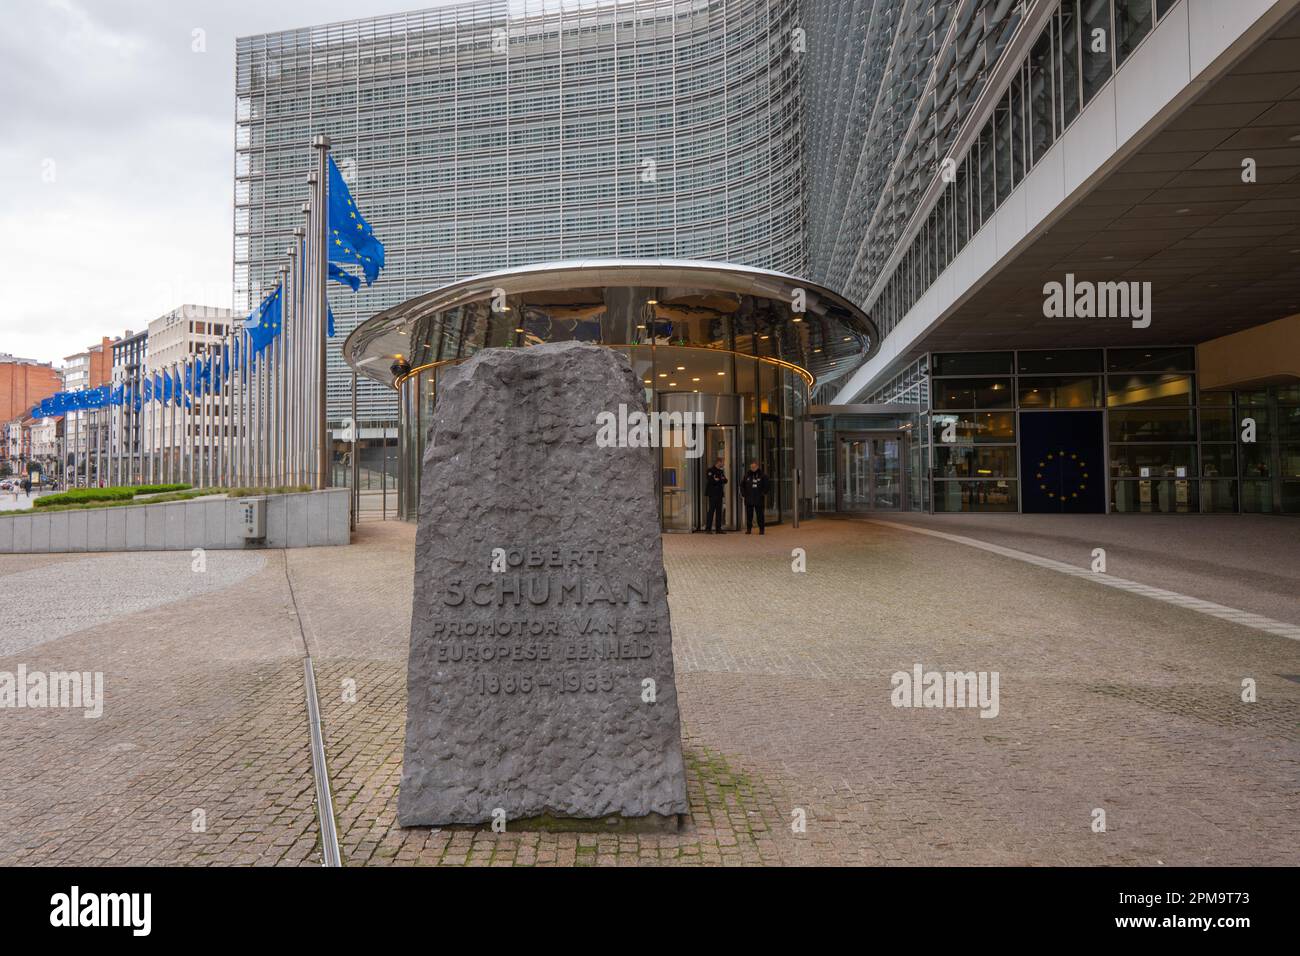 Das Berlaymont-Gebäude vom Robert-Schuman-Kreisverkehr aus gesehen. Das Berlaymont ist ein Bürogebäude in Brüssel, Belgien, in dem sich der Hauptsitz befindet Stockfoto